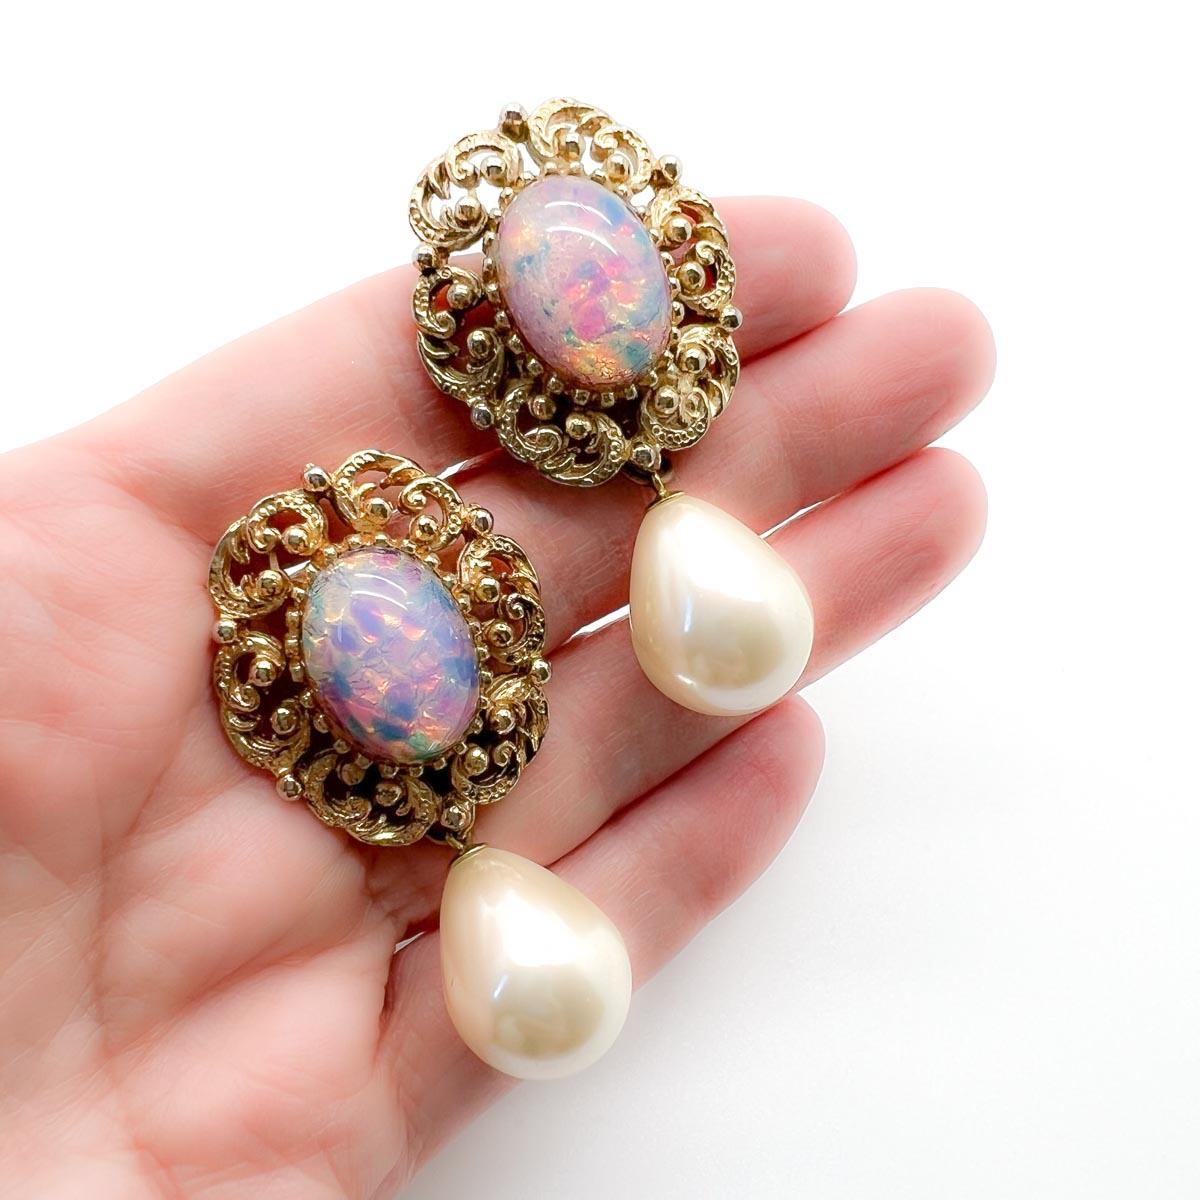 Ein schönes Paar Vintage Opal Glas Ohrringe. Ein großer, verschnörkelter, opalisierender Cabochon-Stein geht in eine glänzende, tropfenförmige Perle über, die für ein zeitloses Finish sorgt. Ein perfektes Paar Ohrringe, das einen wunderbar femininen